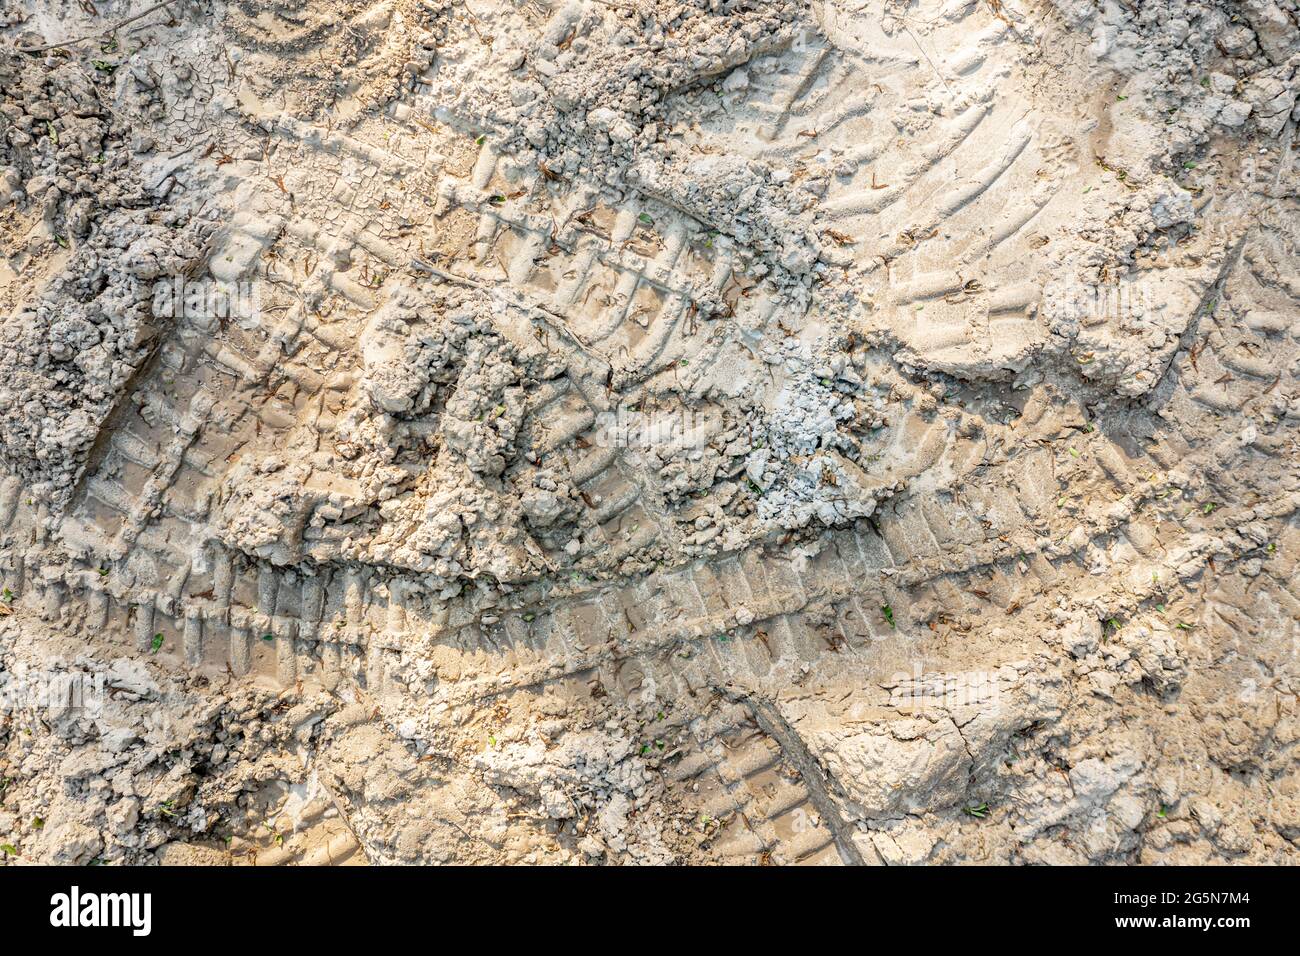 Vue aérienne des chenilles de bulldozer dans la terre Banque D'Images